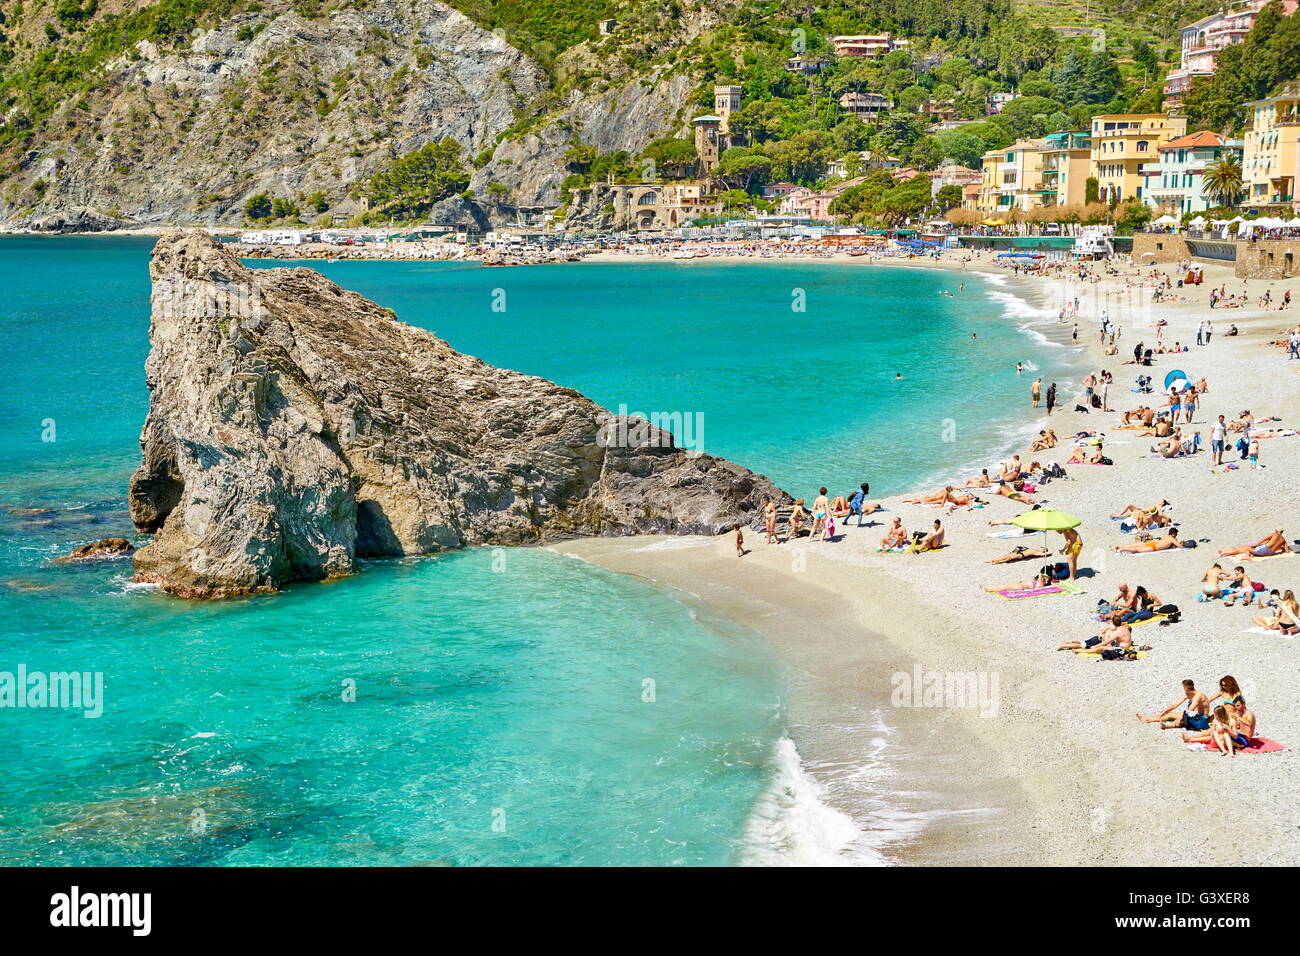 Beach of Monterosso al Mare, Cinque Terre, Liguria, Italy Stock Photo